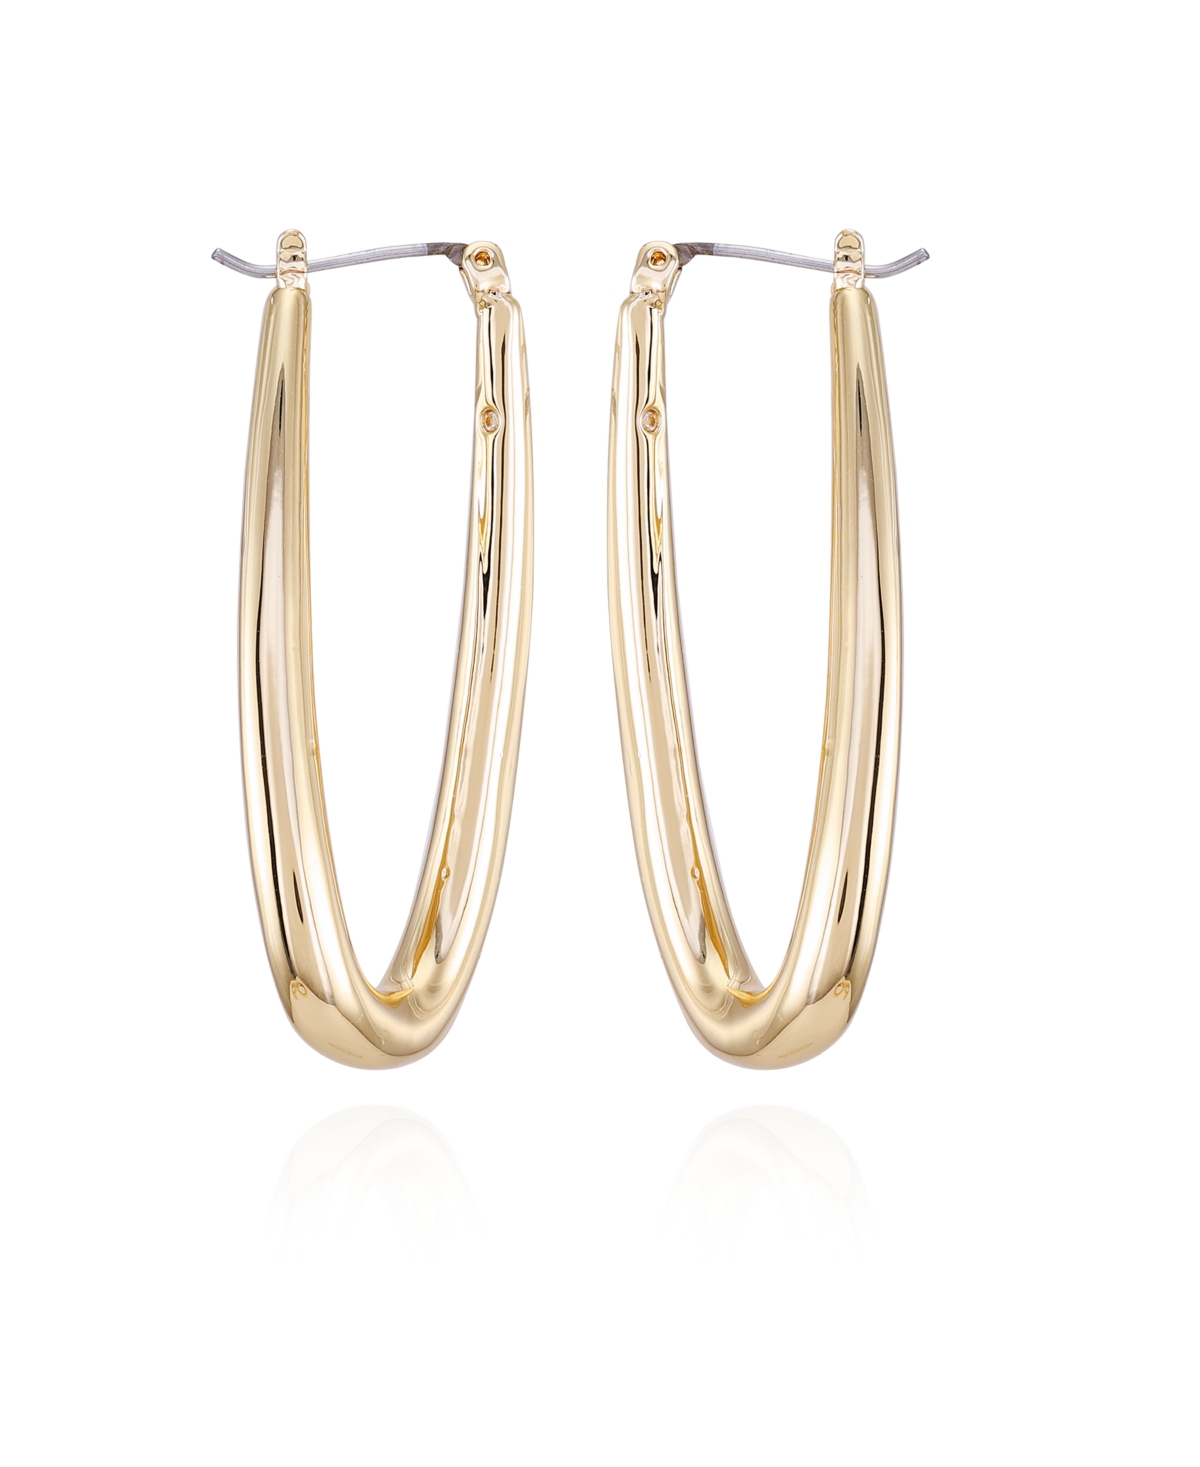 Gold-Tone Oval Hoop Earrings - Gold